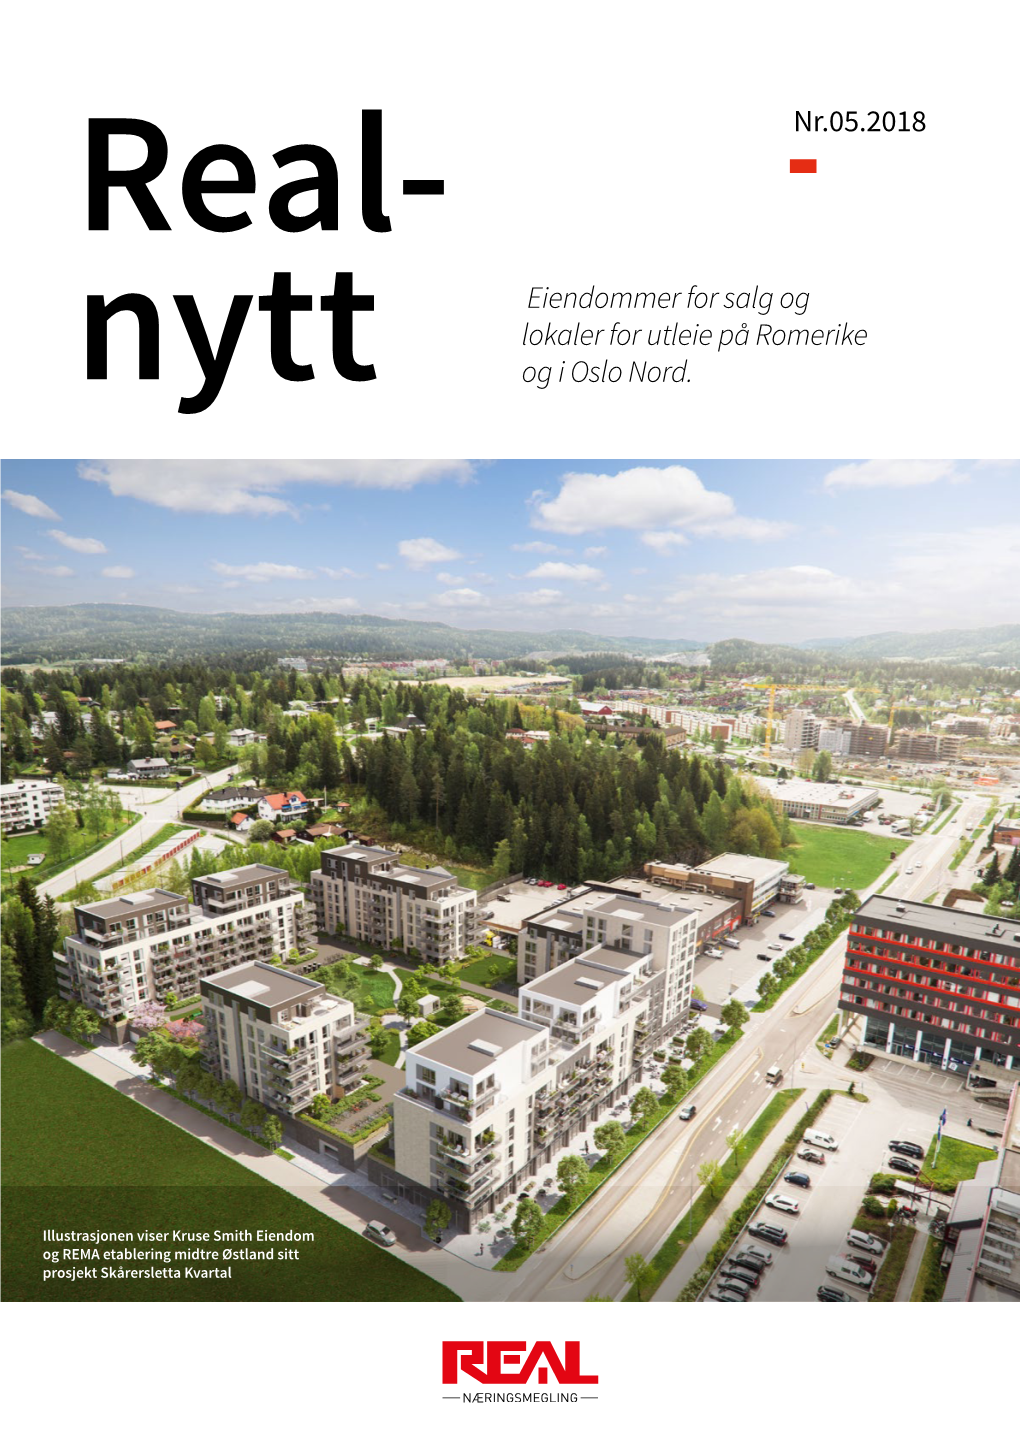 Nytt Eiendommer for Salg Og Lokaler for Utleie På Romerike Og I Oslo Nord. Nr.05.2018